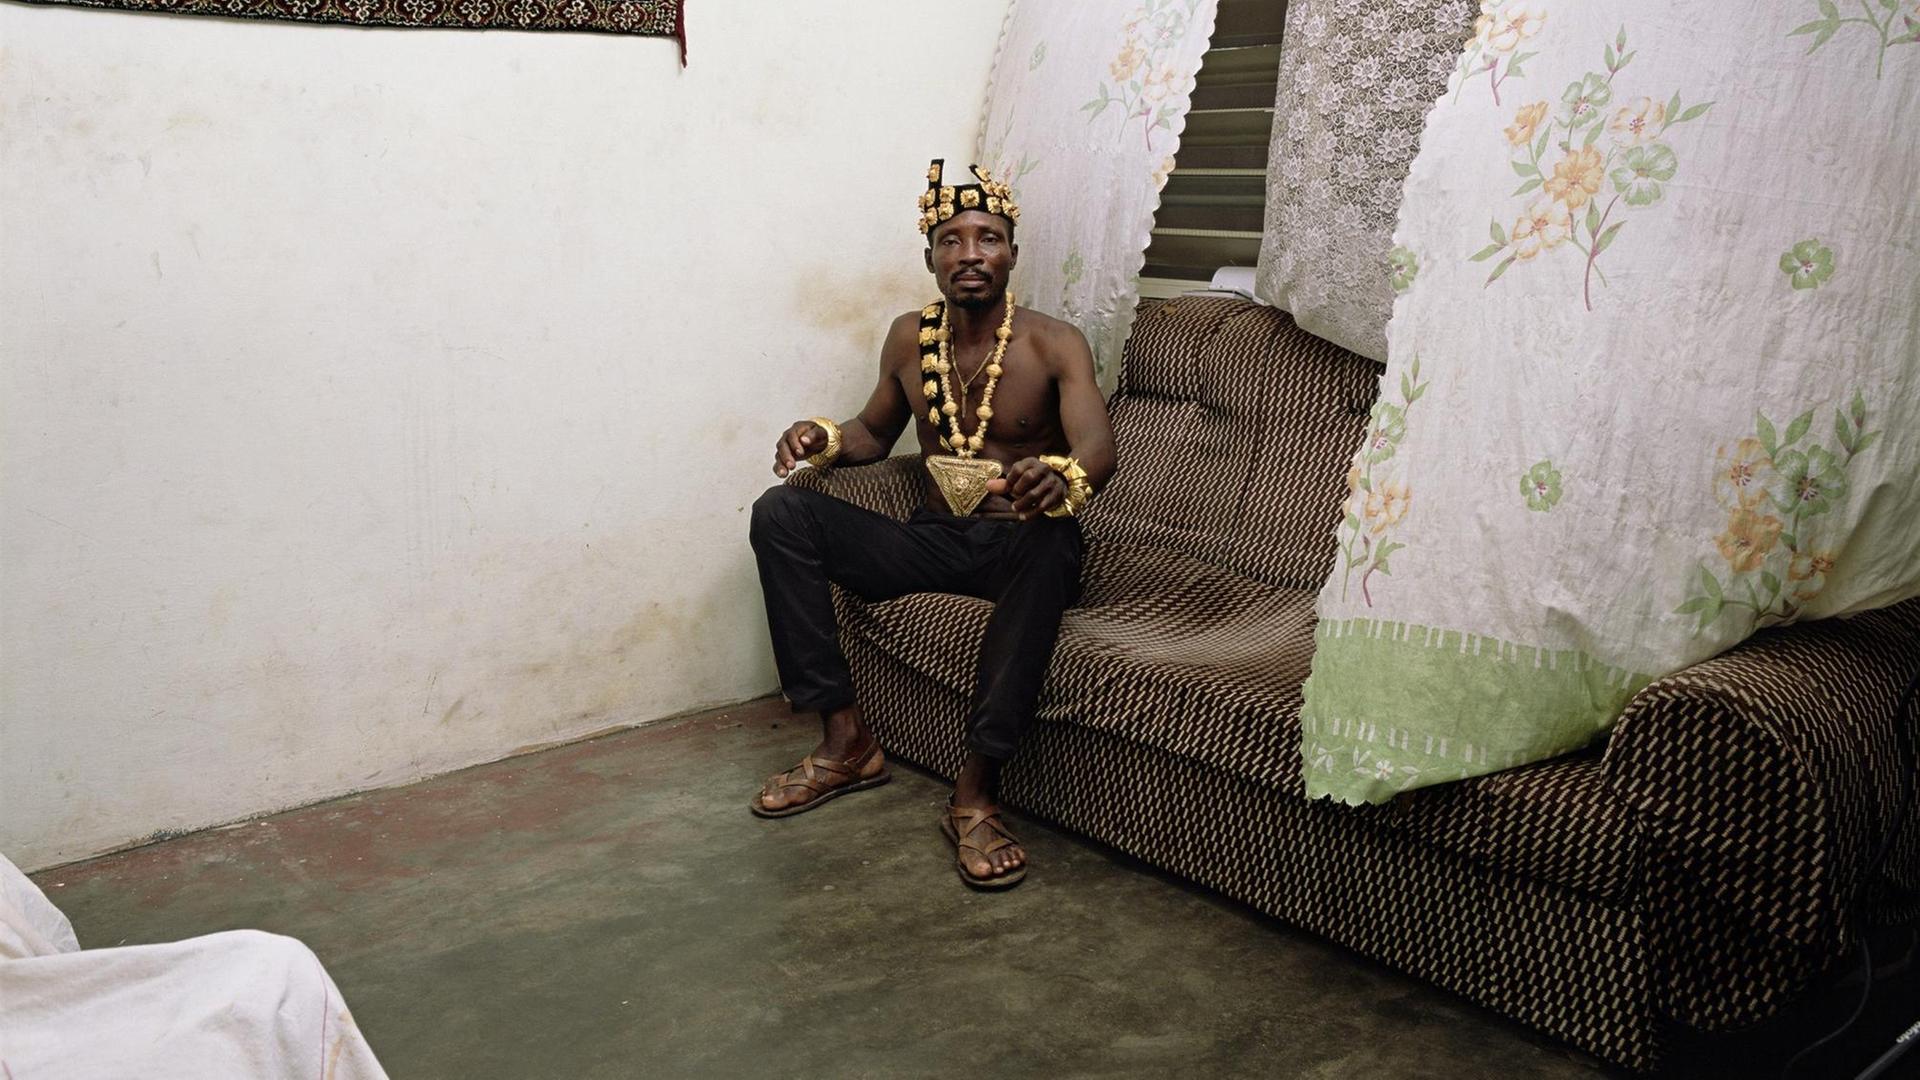 Deanna Lawson: Chief, 2019. Das Foto zeigt einen Mann mit Goldkrone und Goldkette auf einem alten Sofa sitzend.